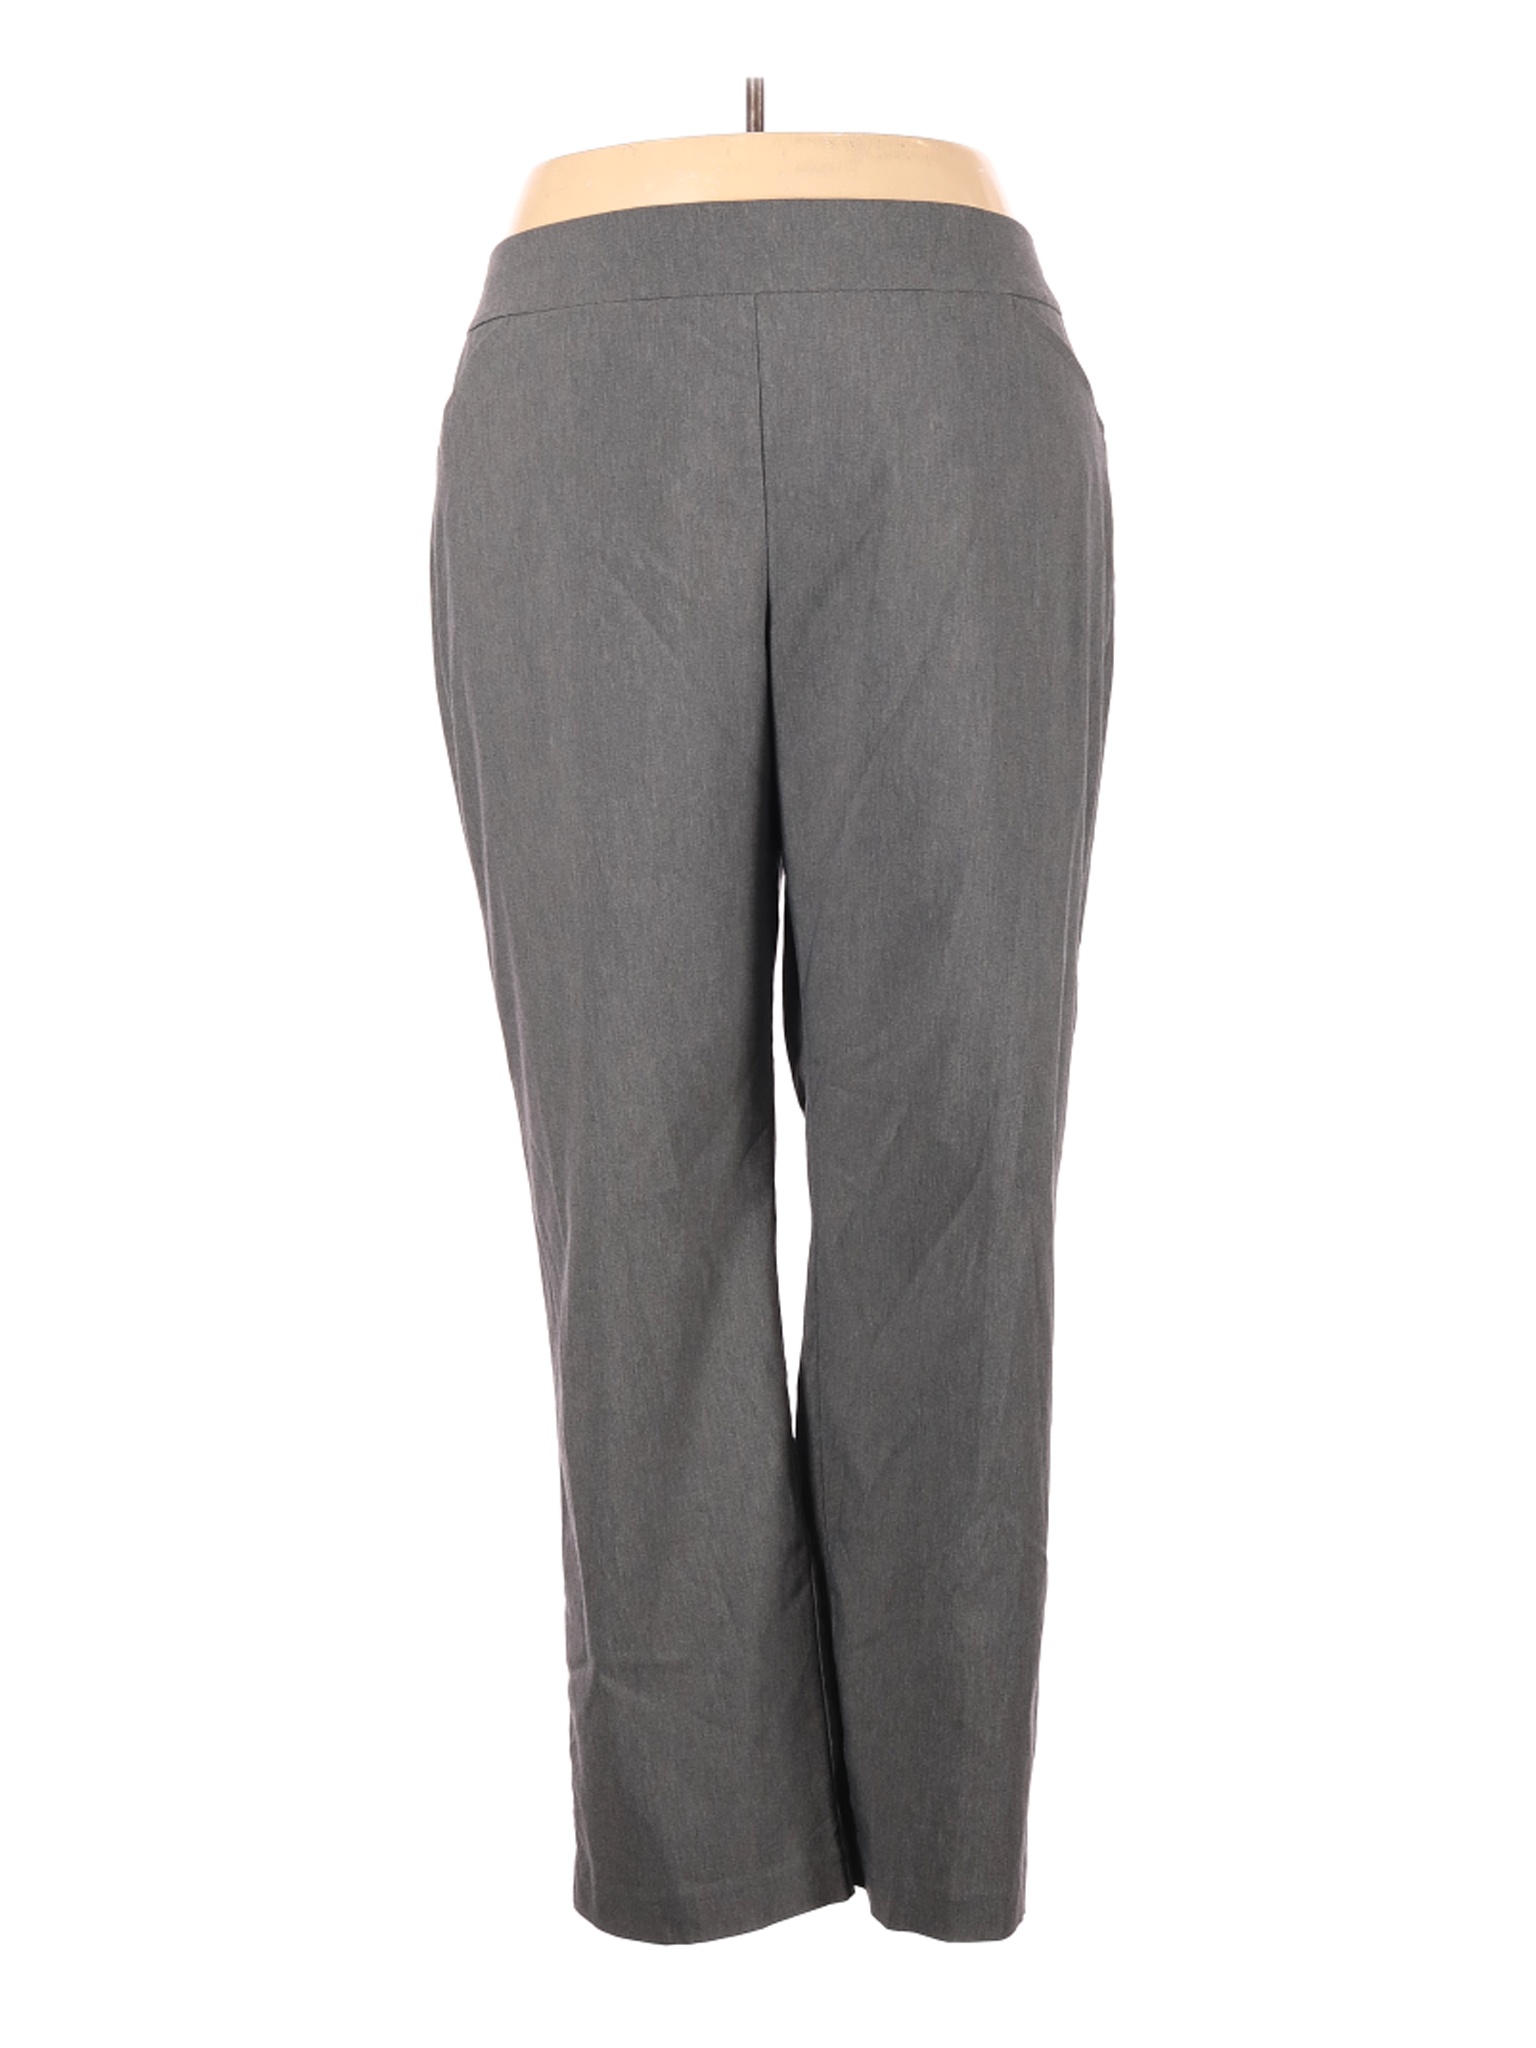 Talbots Outlet Women Gray Dress Pants 26 Plus | eBay